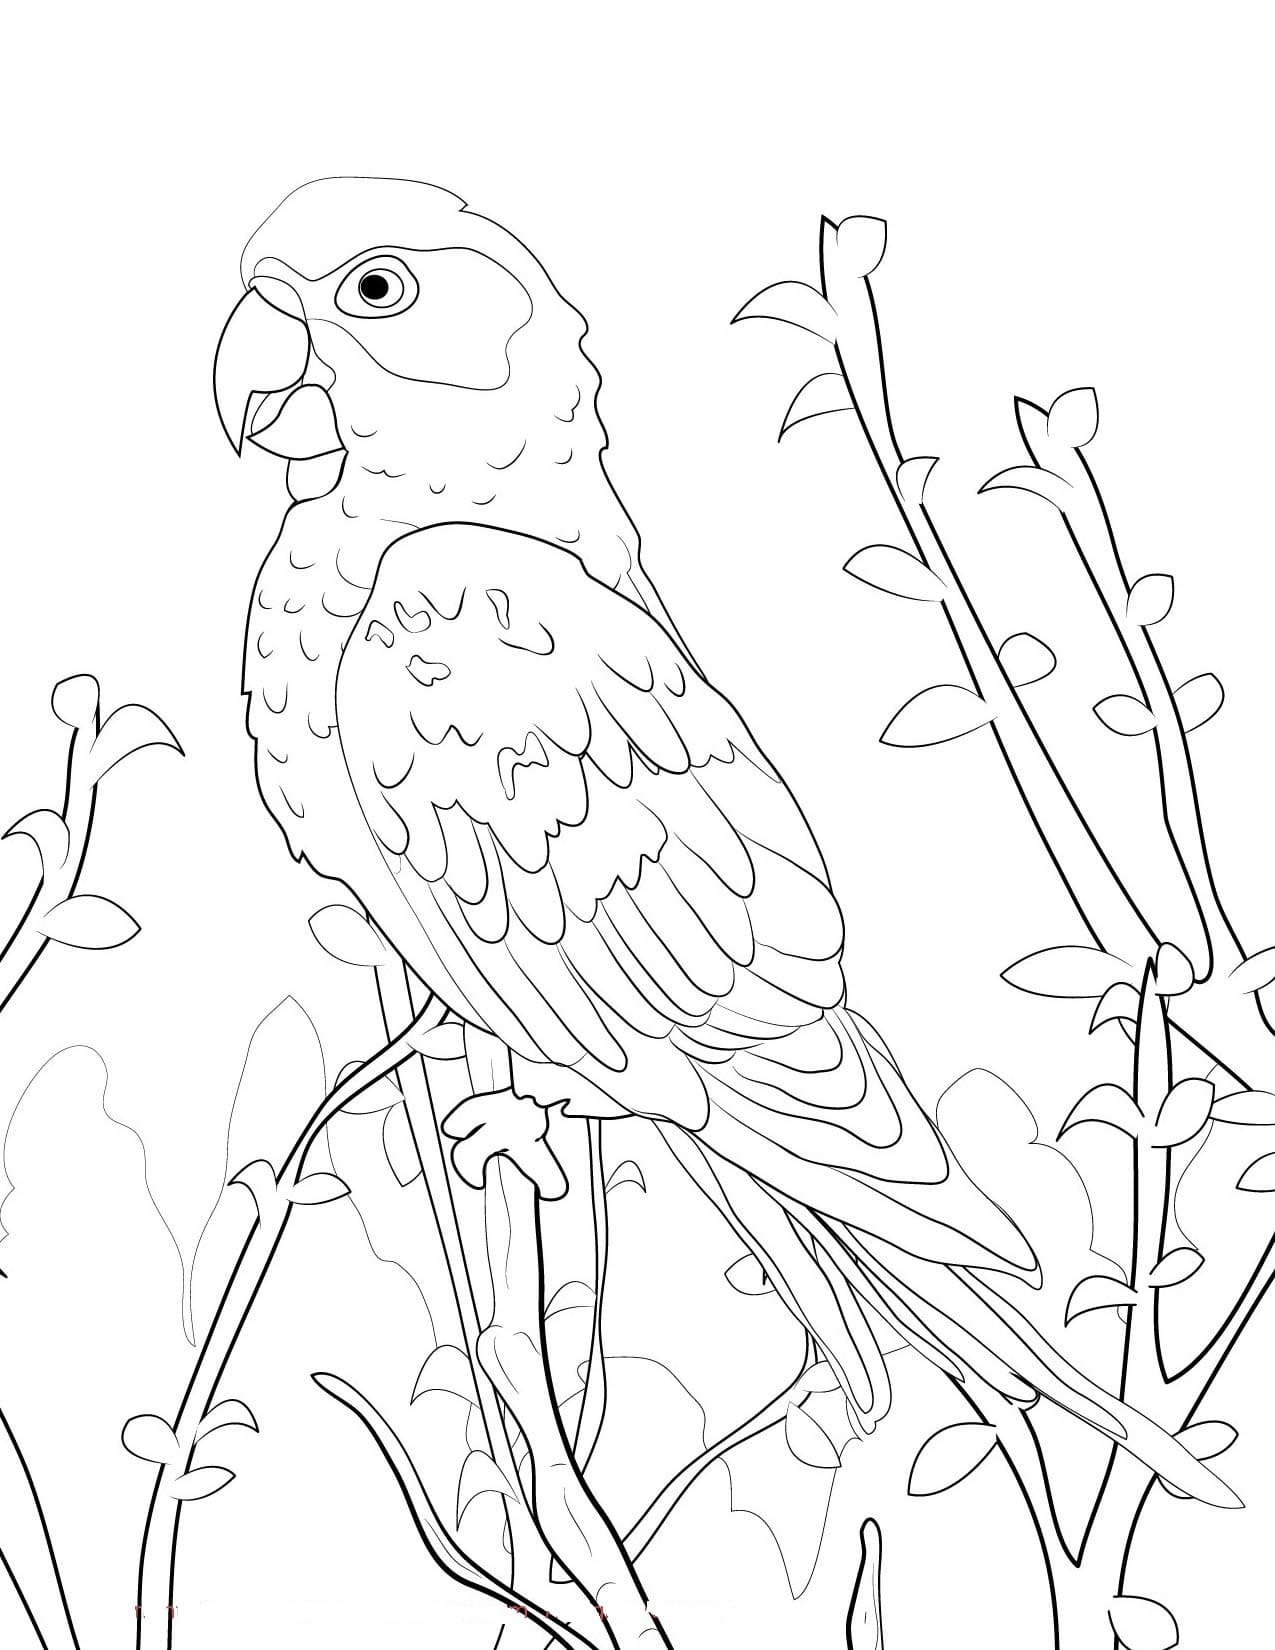 Волнистый попугай раскраска